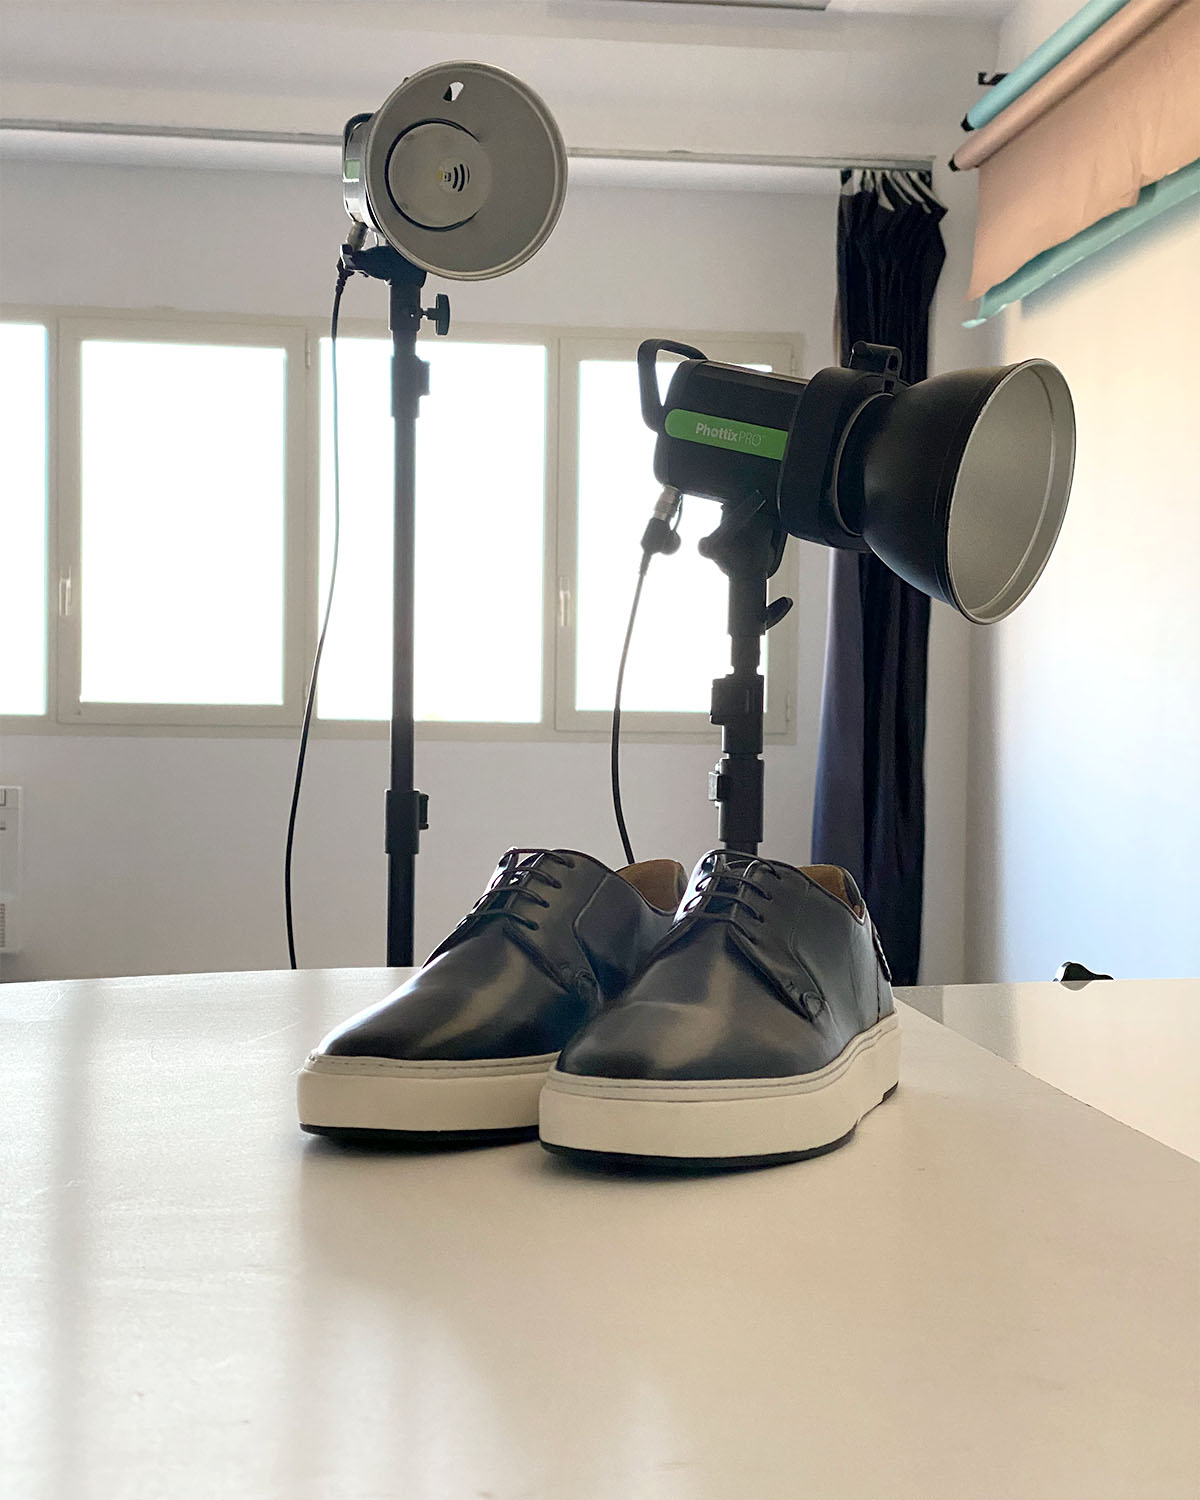 paio di scarpe da uomo in studio fotografico per servizio still-life ecommerce